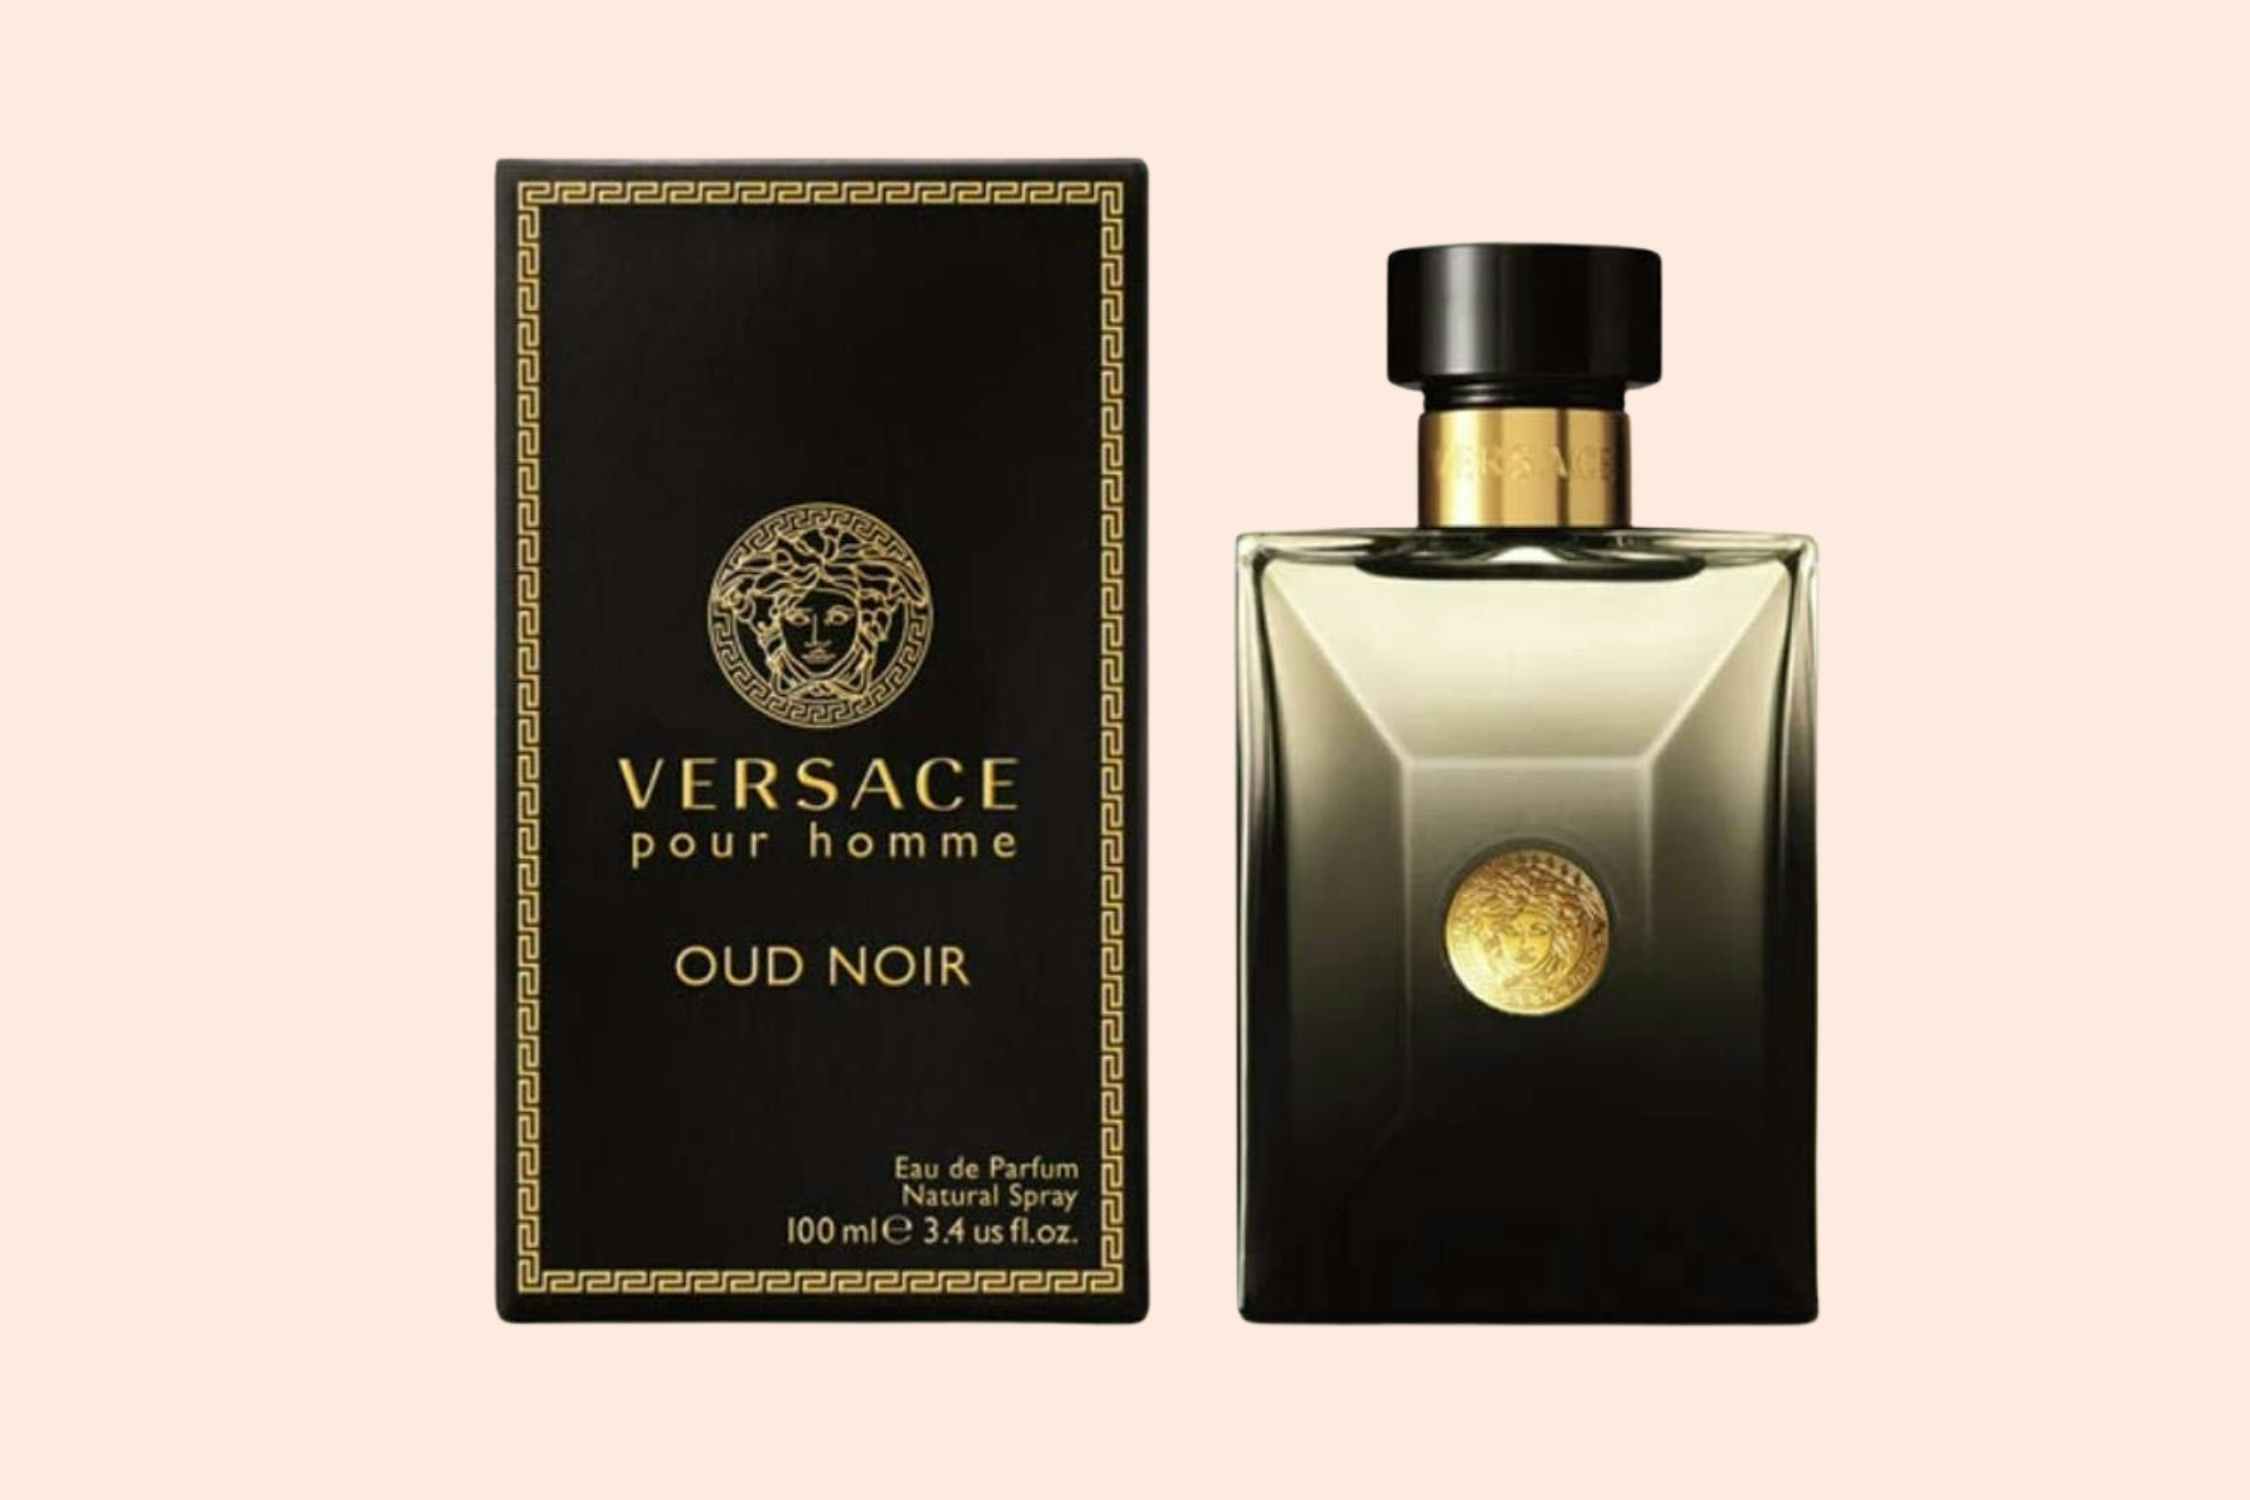 Versace Parfum, as Low as $51 on Amazon (Reg. $155)